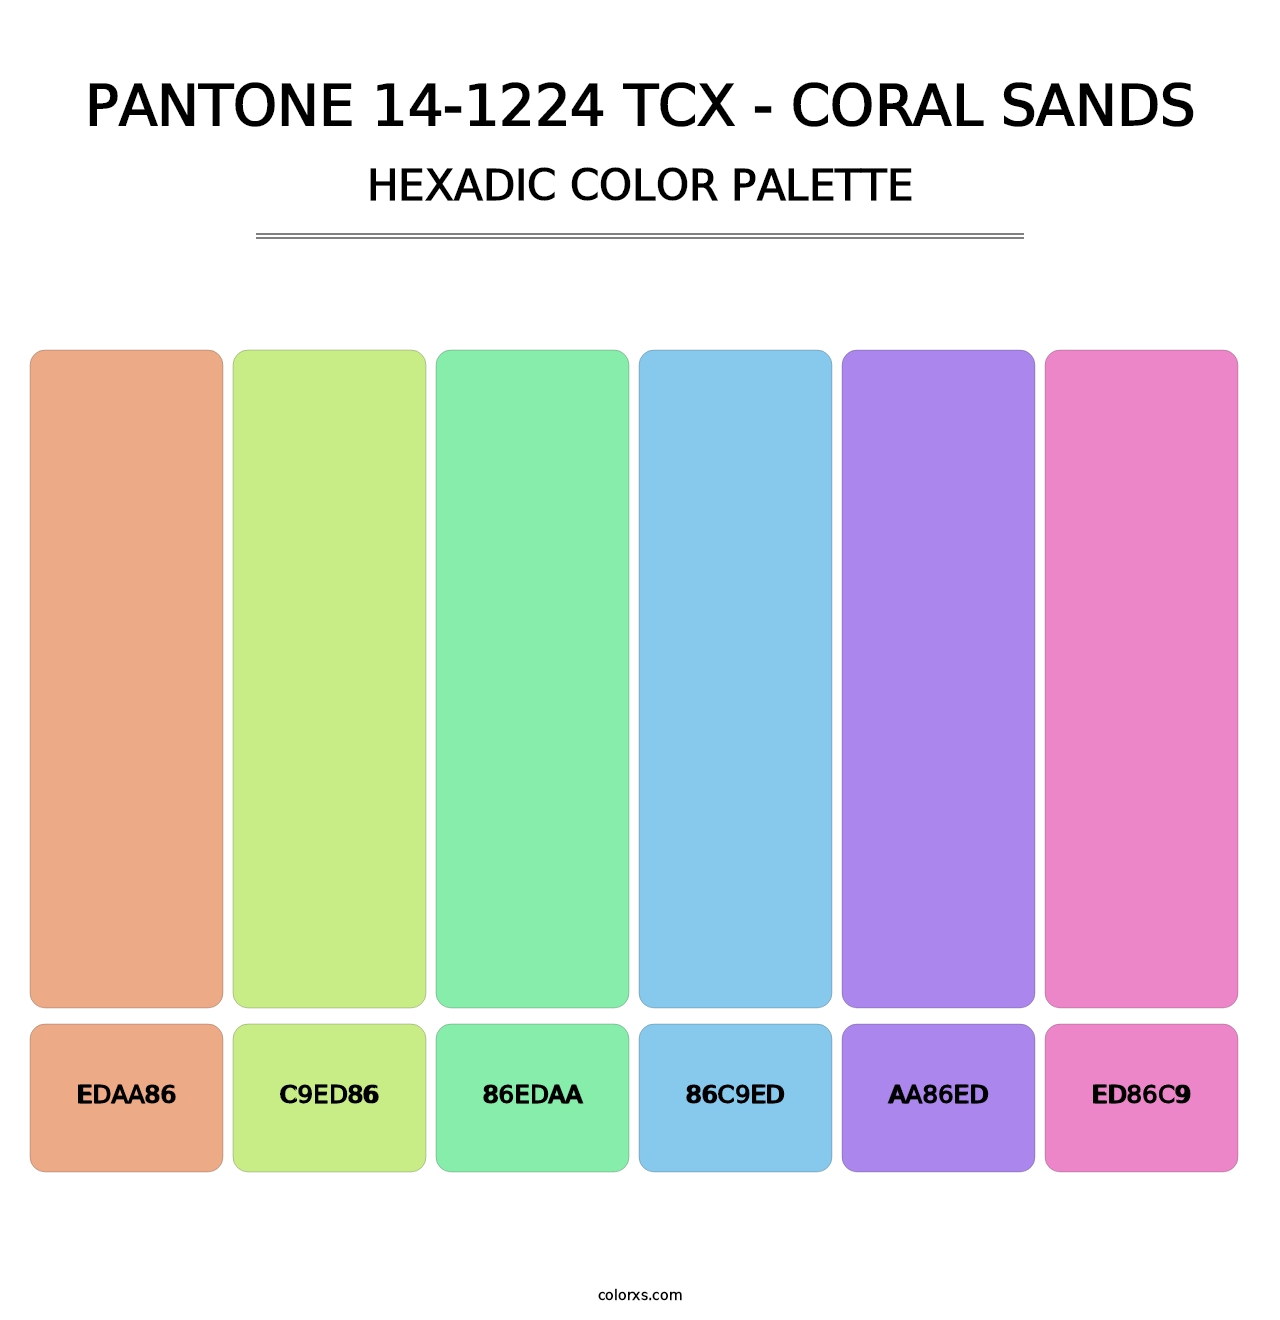 PANTONE 14-1224 TCX - Coral Sands - Hexadic Color Palette